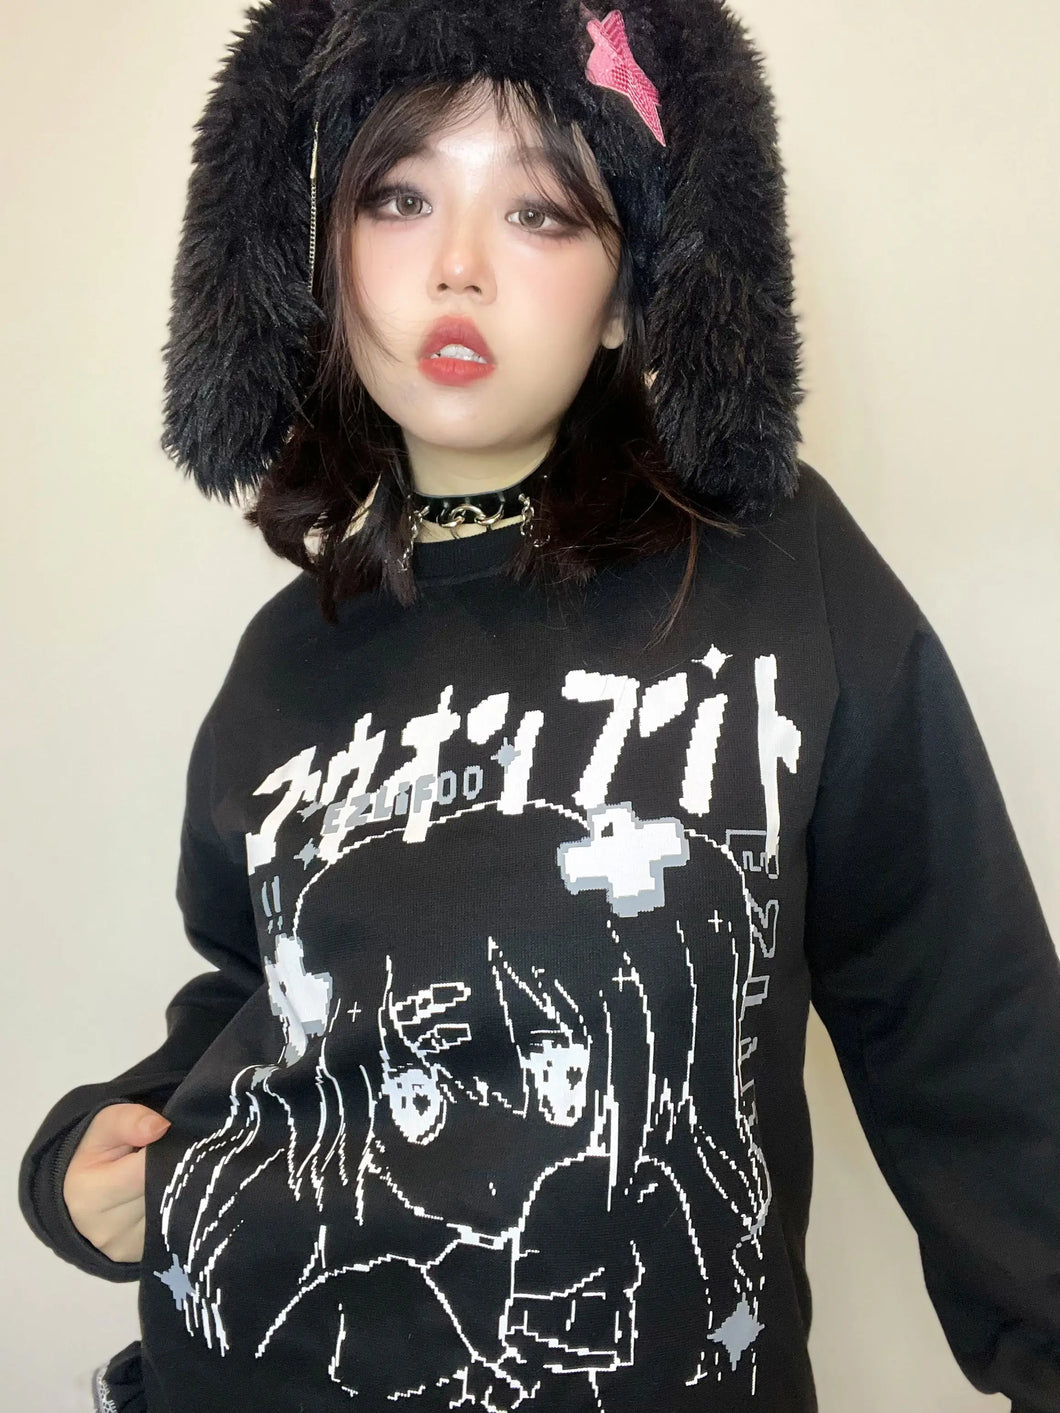 'After School' Anime Girls Kawaii Pullover Top AlielNosirrah